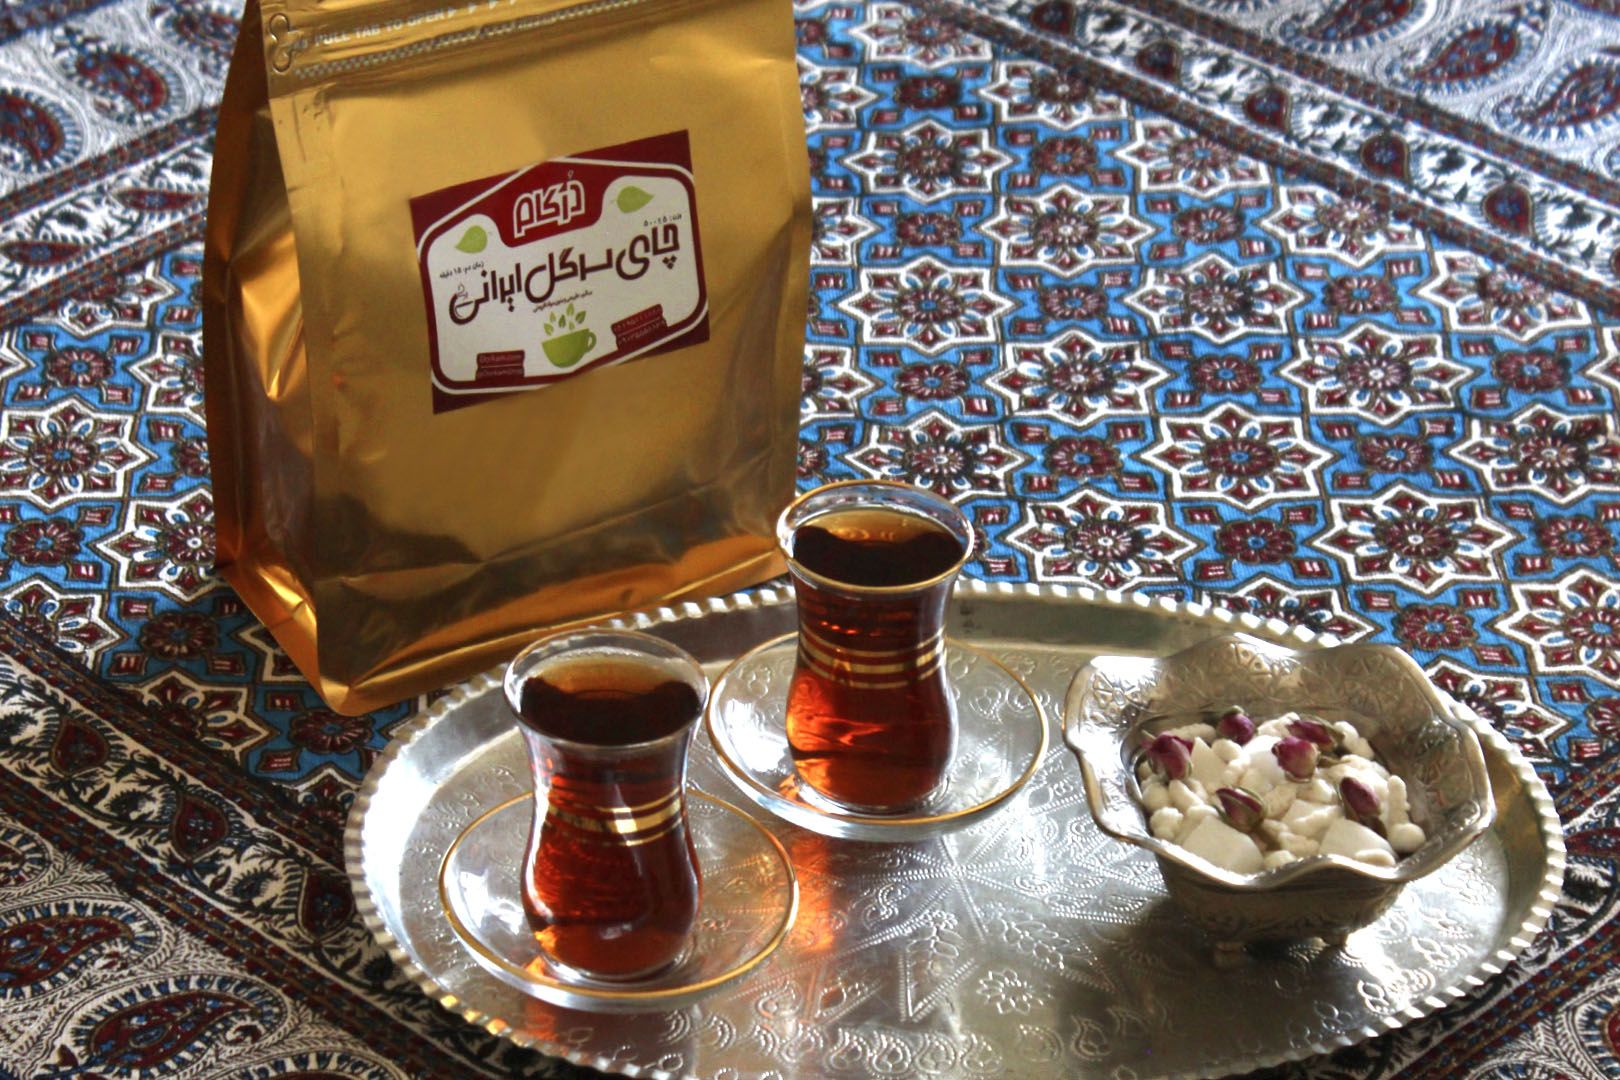 فروش چای ایرانی شمال با تخفیف ویژه